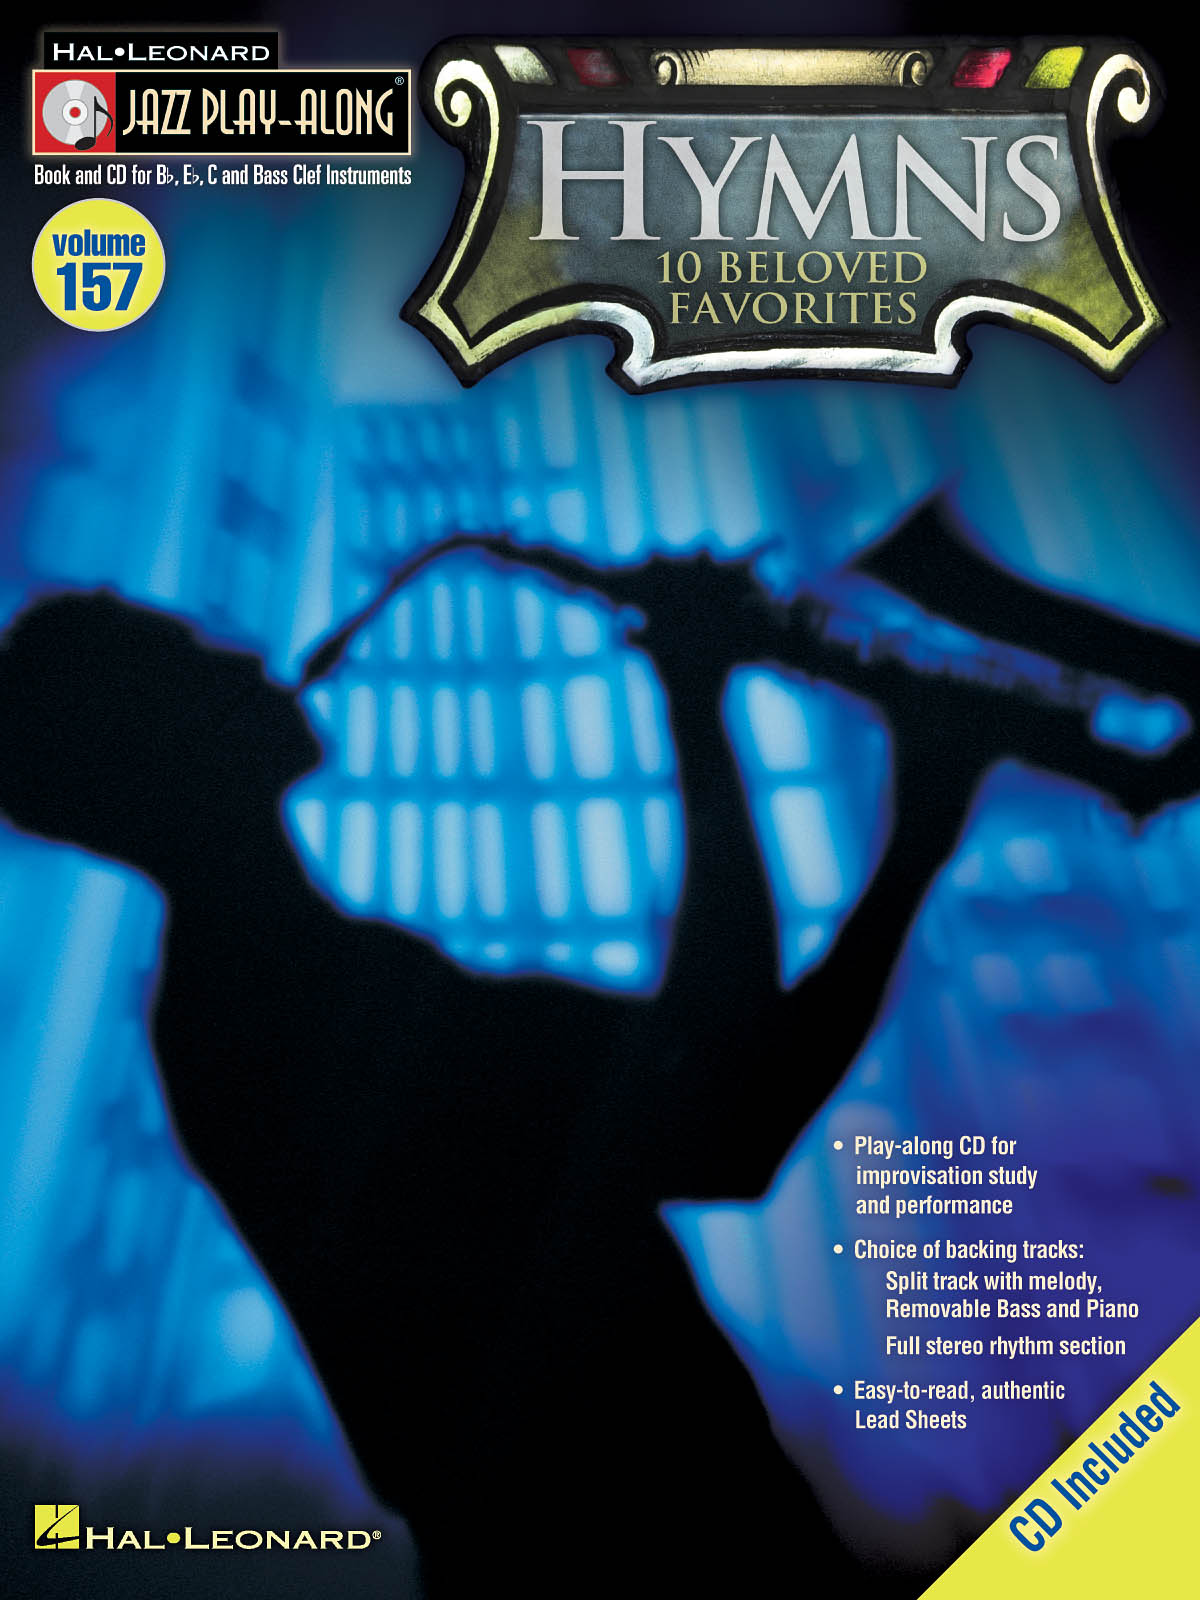 Hymns - Jazz Play-Along Volume 157 - melodie s akordy pro nástroje v ladění C